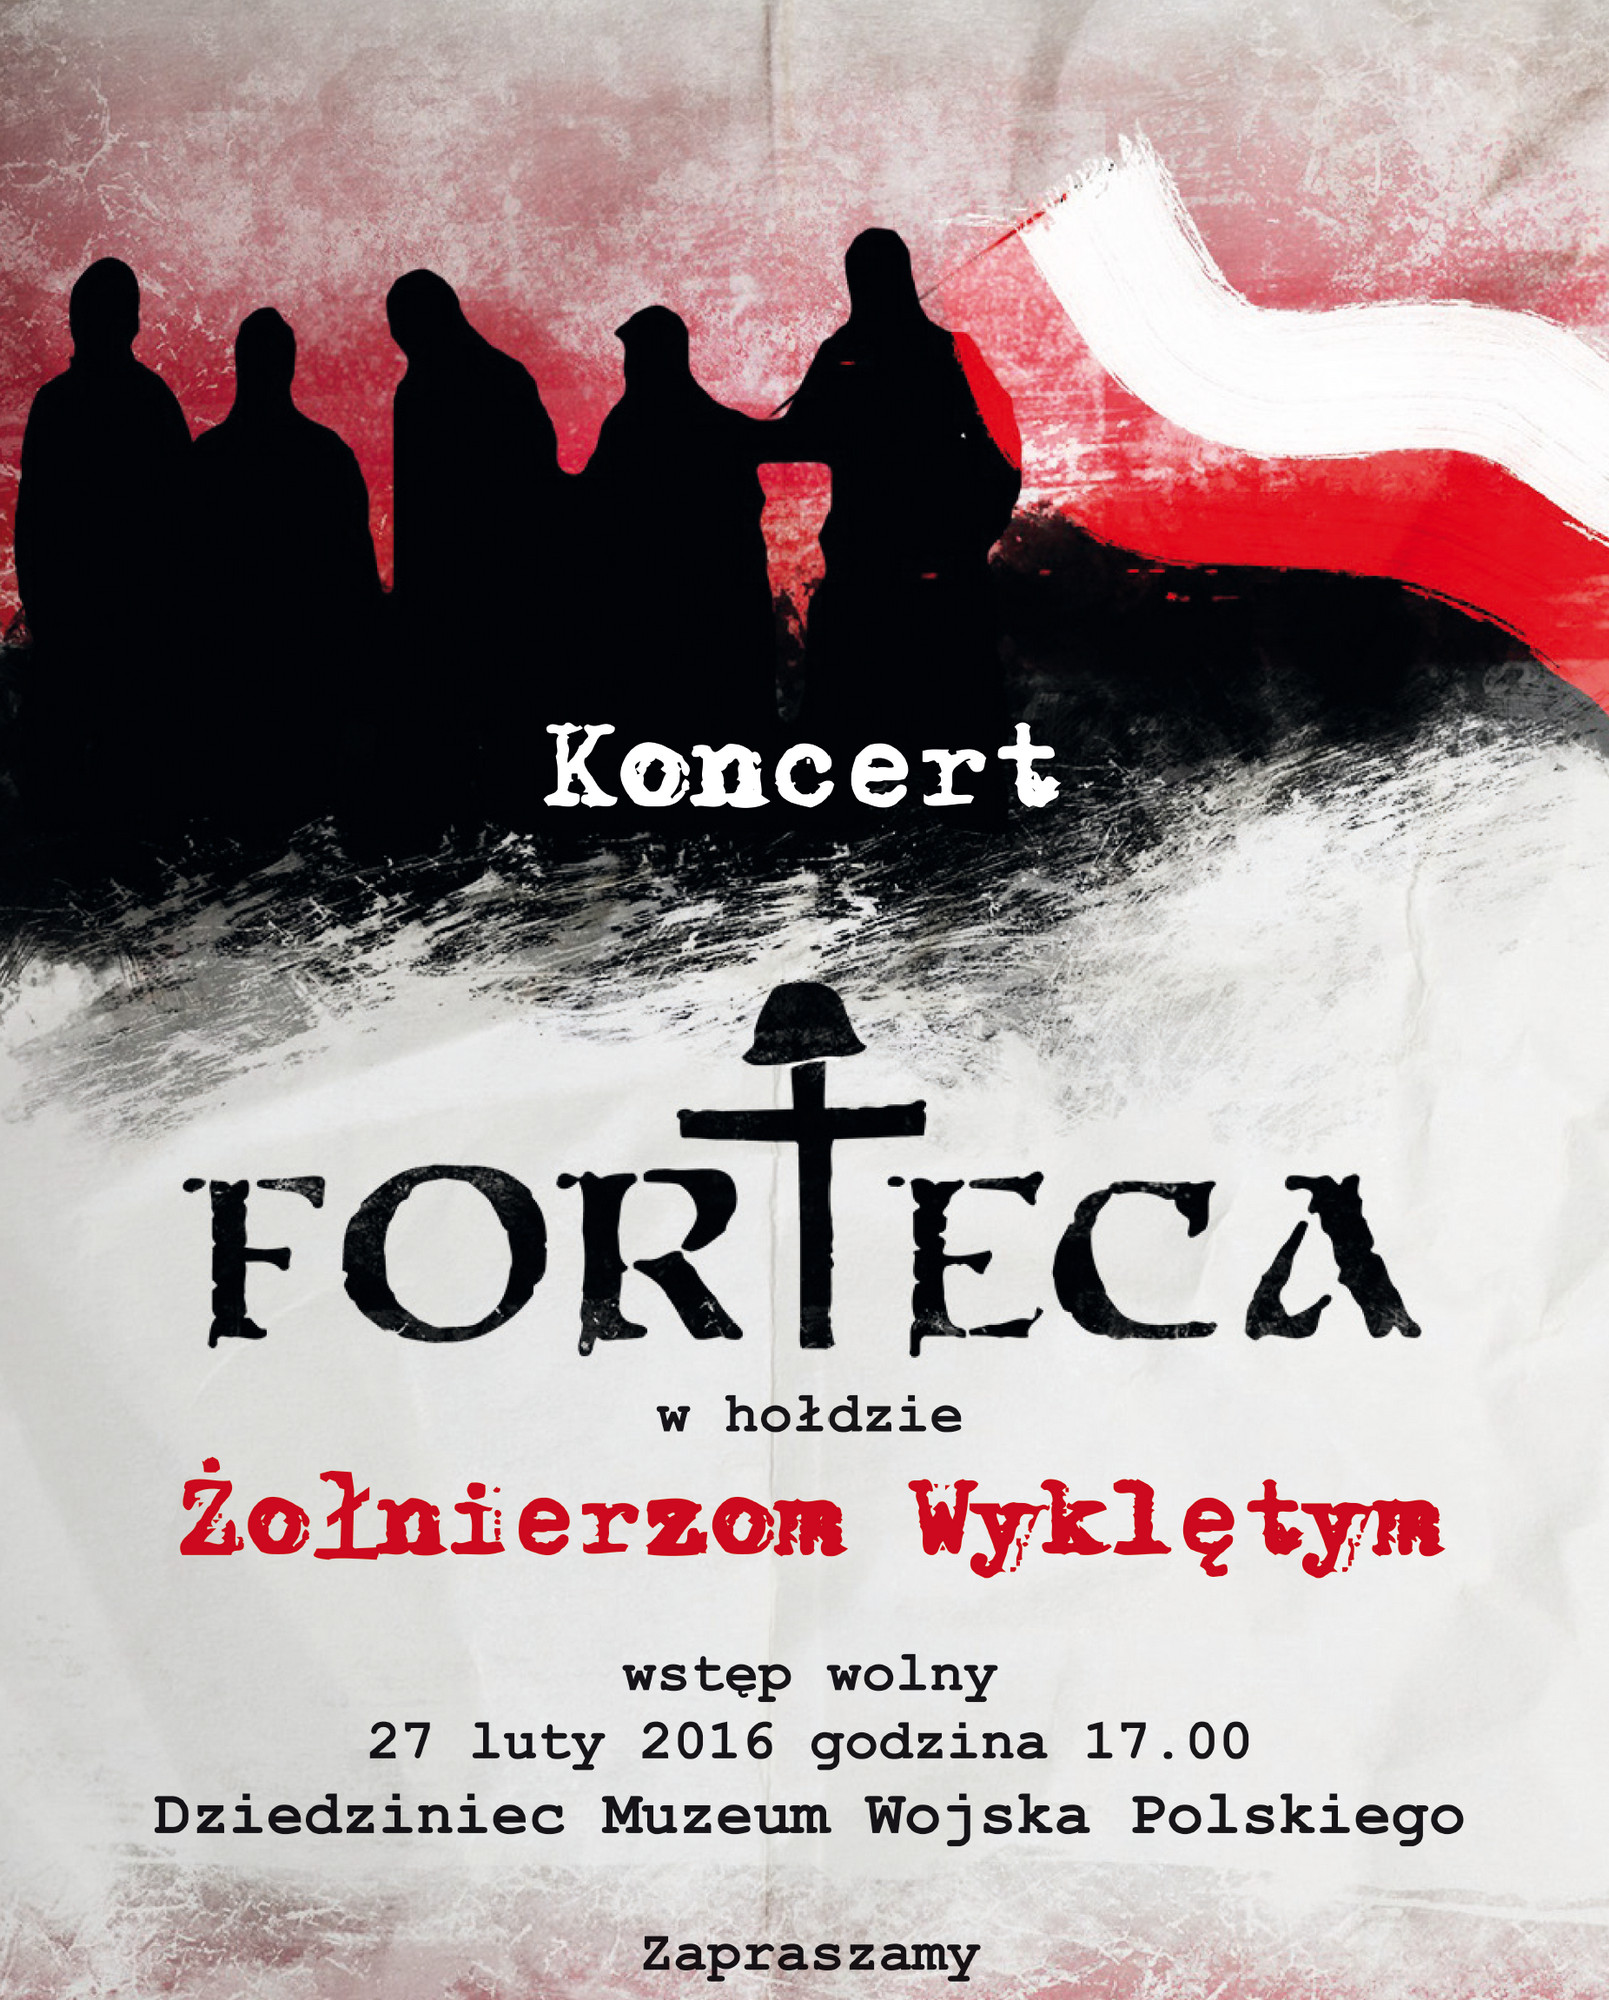 Koncert zespołu Forteca w hołdzie Żołnierzom Wykletym – plakat (źródło: materiały prasowe)